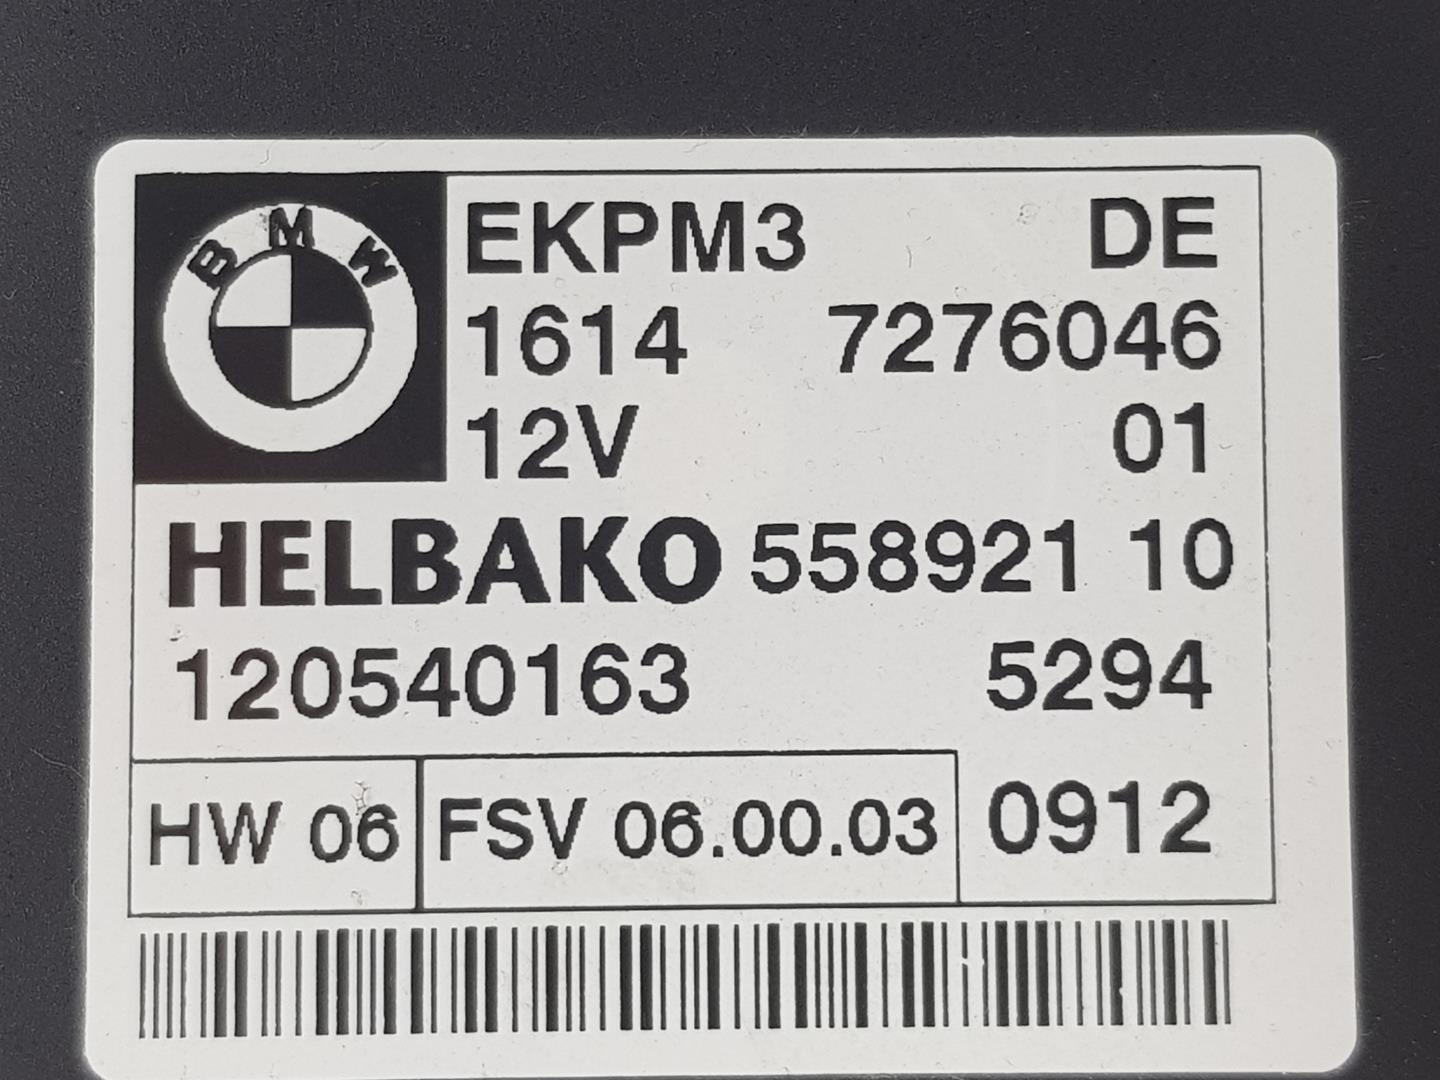 BMW 3 Series E90/E91/E92/E93 (2004-2013) Kiti valdymo blokai 16147276046, 7276046 19927079